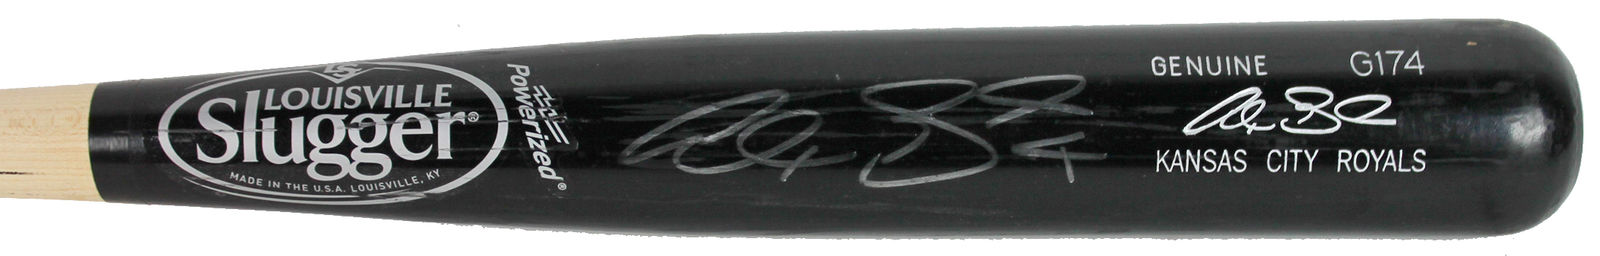 alex gordon game bat autograph